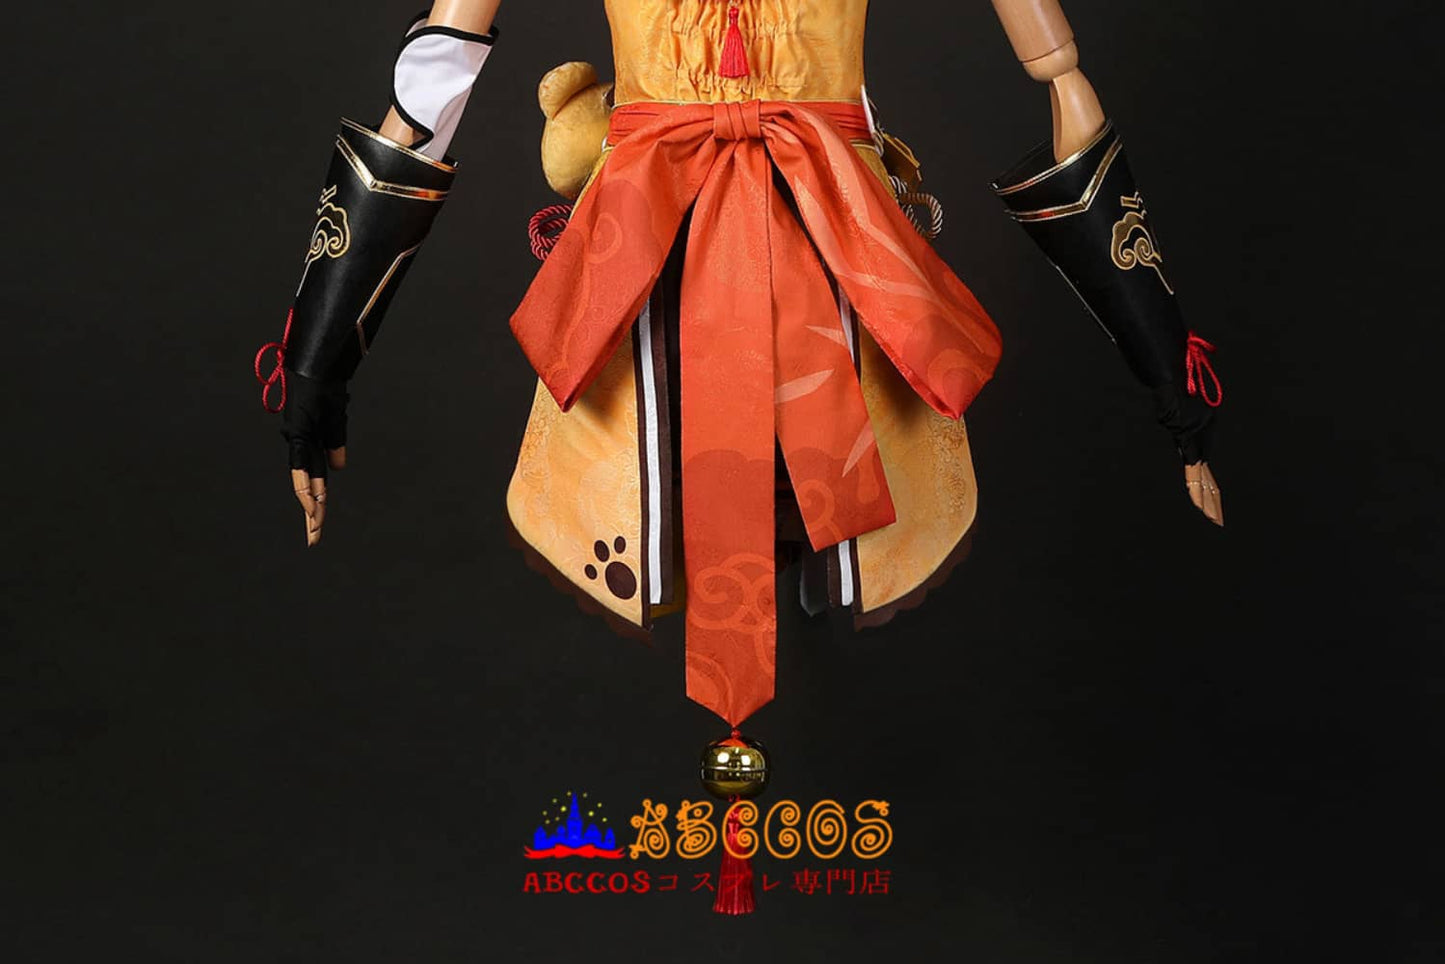 Genshin Impact Xiangling Cosplay Costume